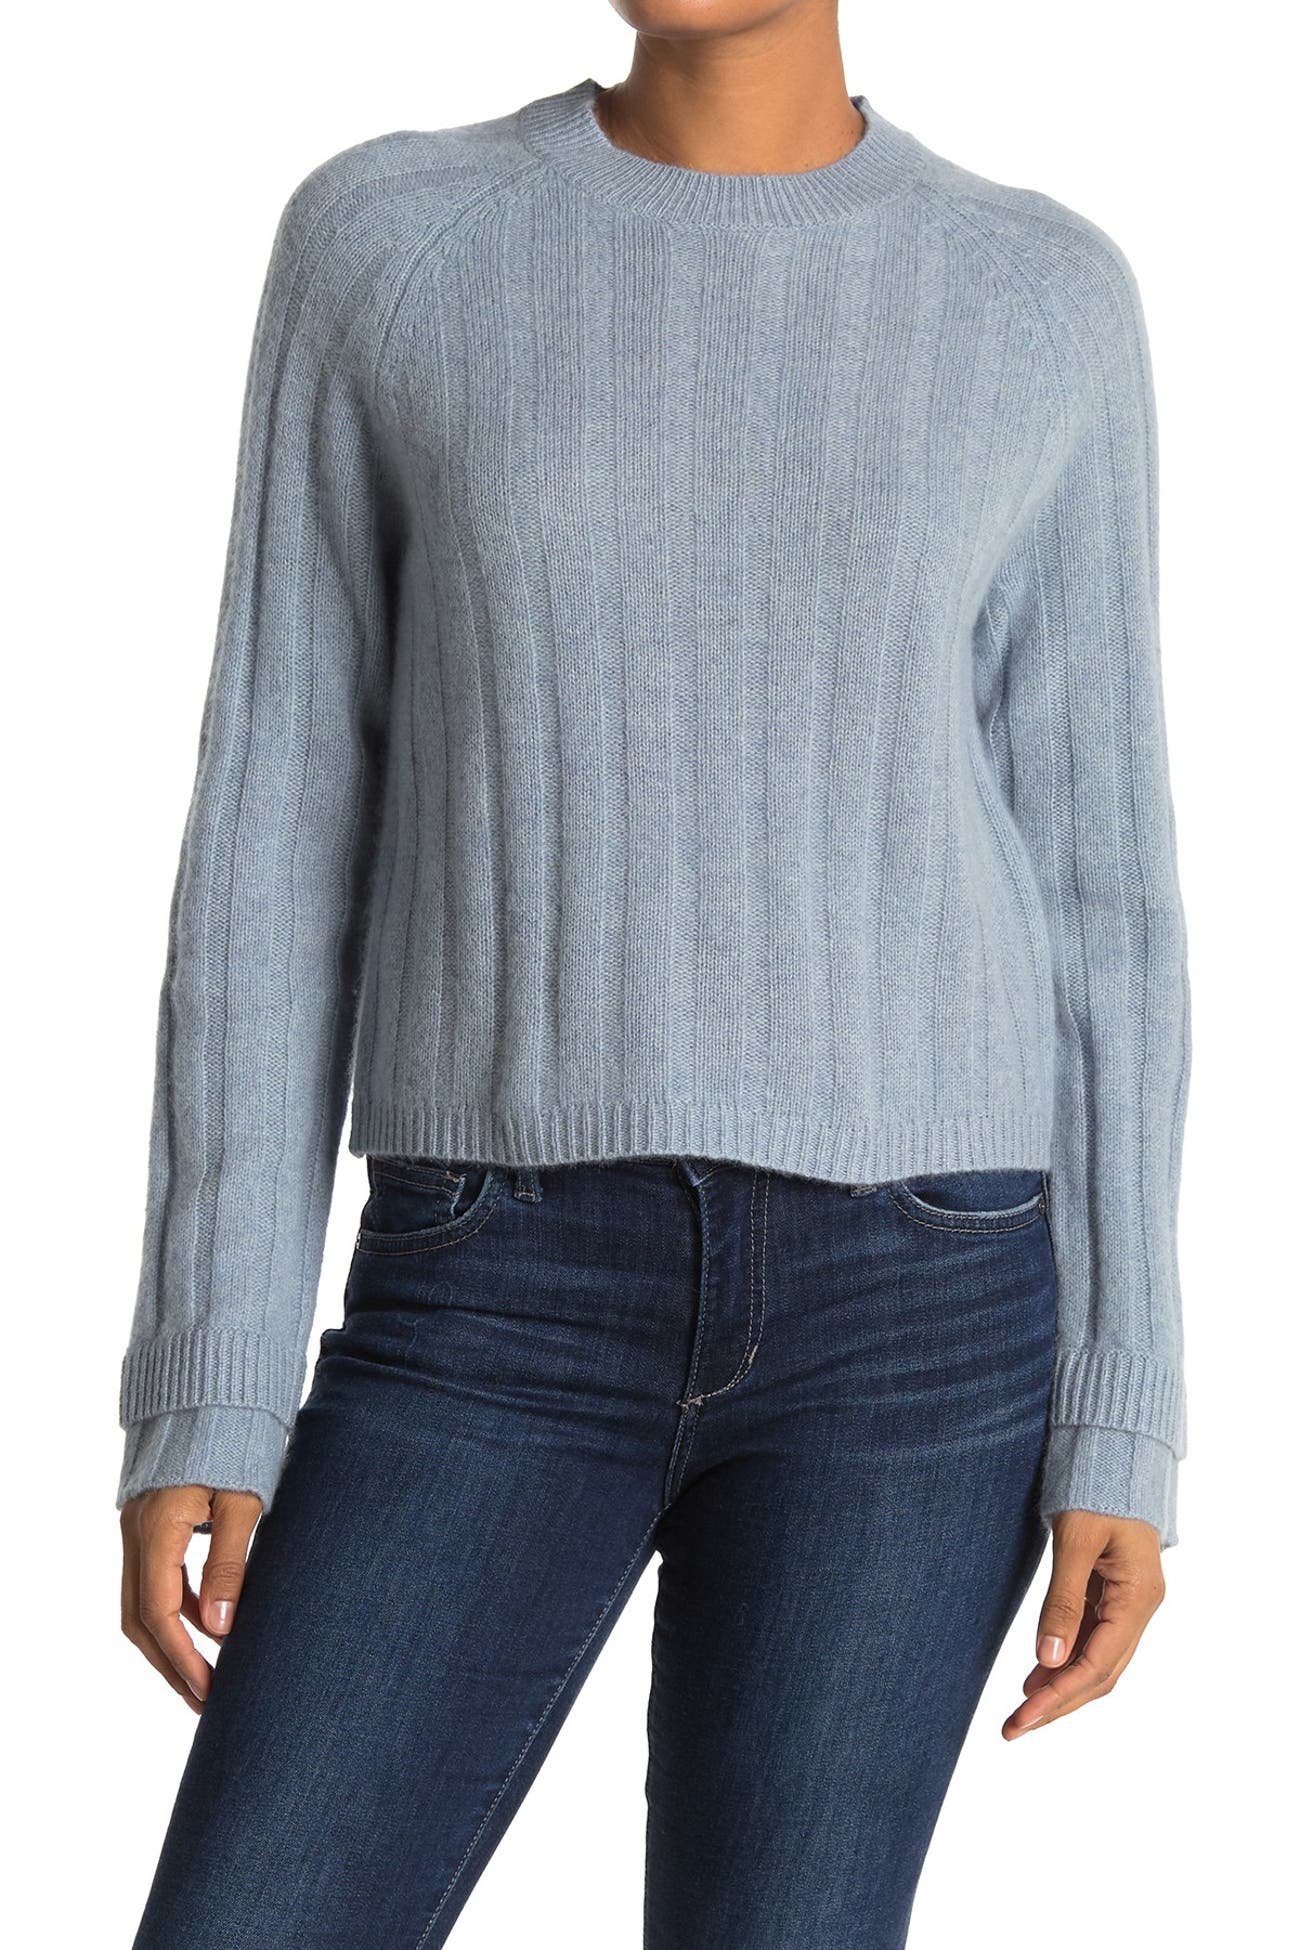 360 Cashmere | Tatia Layered Cuff Cashmere Sweater | Nordstrom Rack